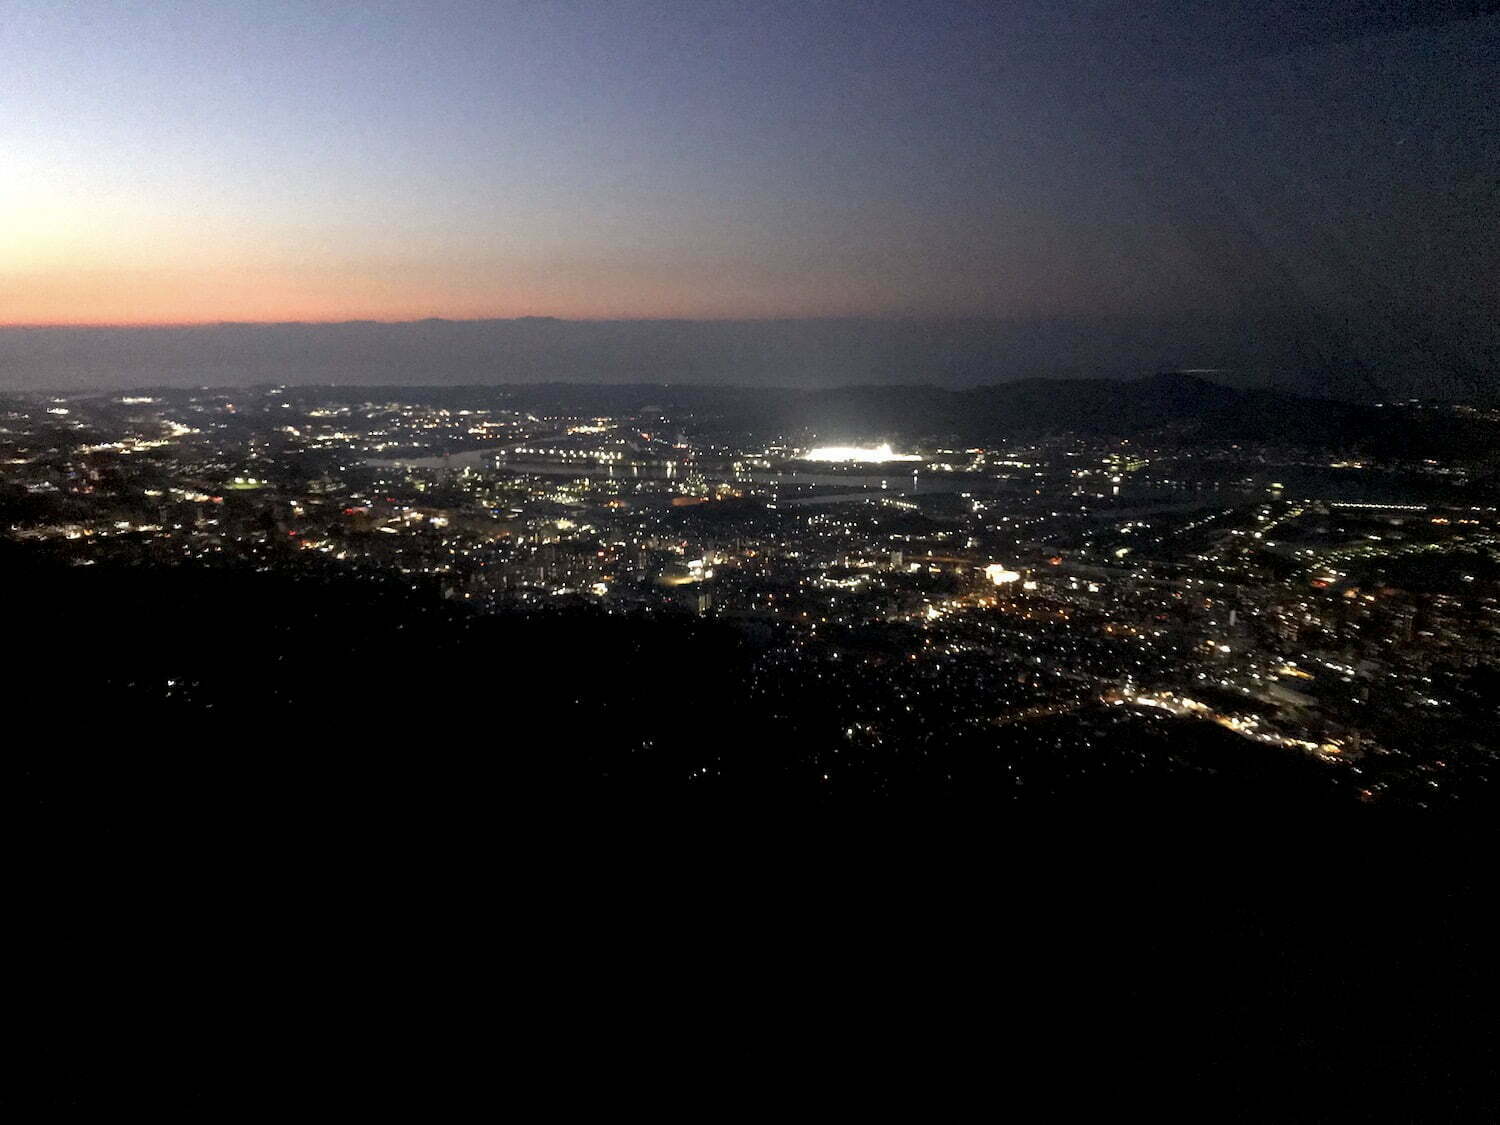 Night view of Mt. Sarakura